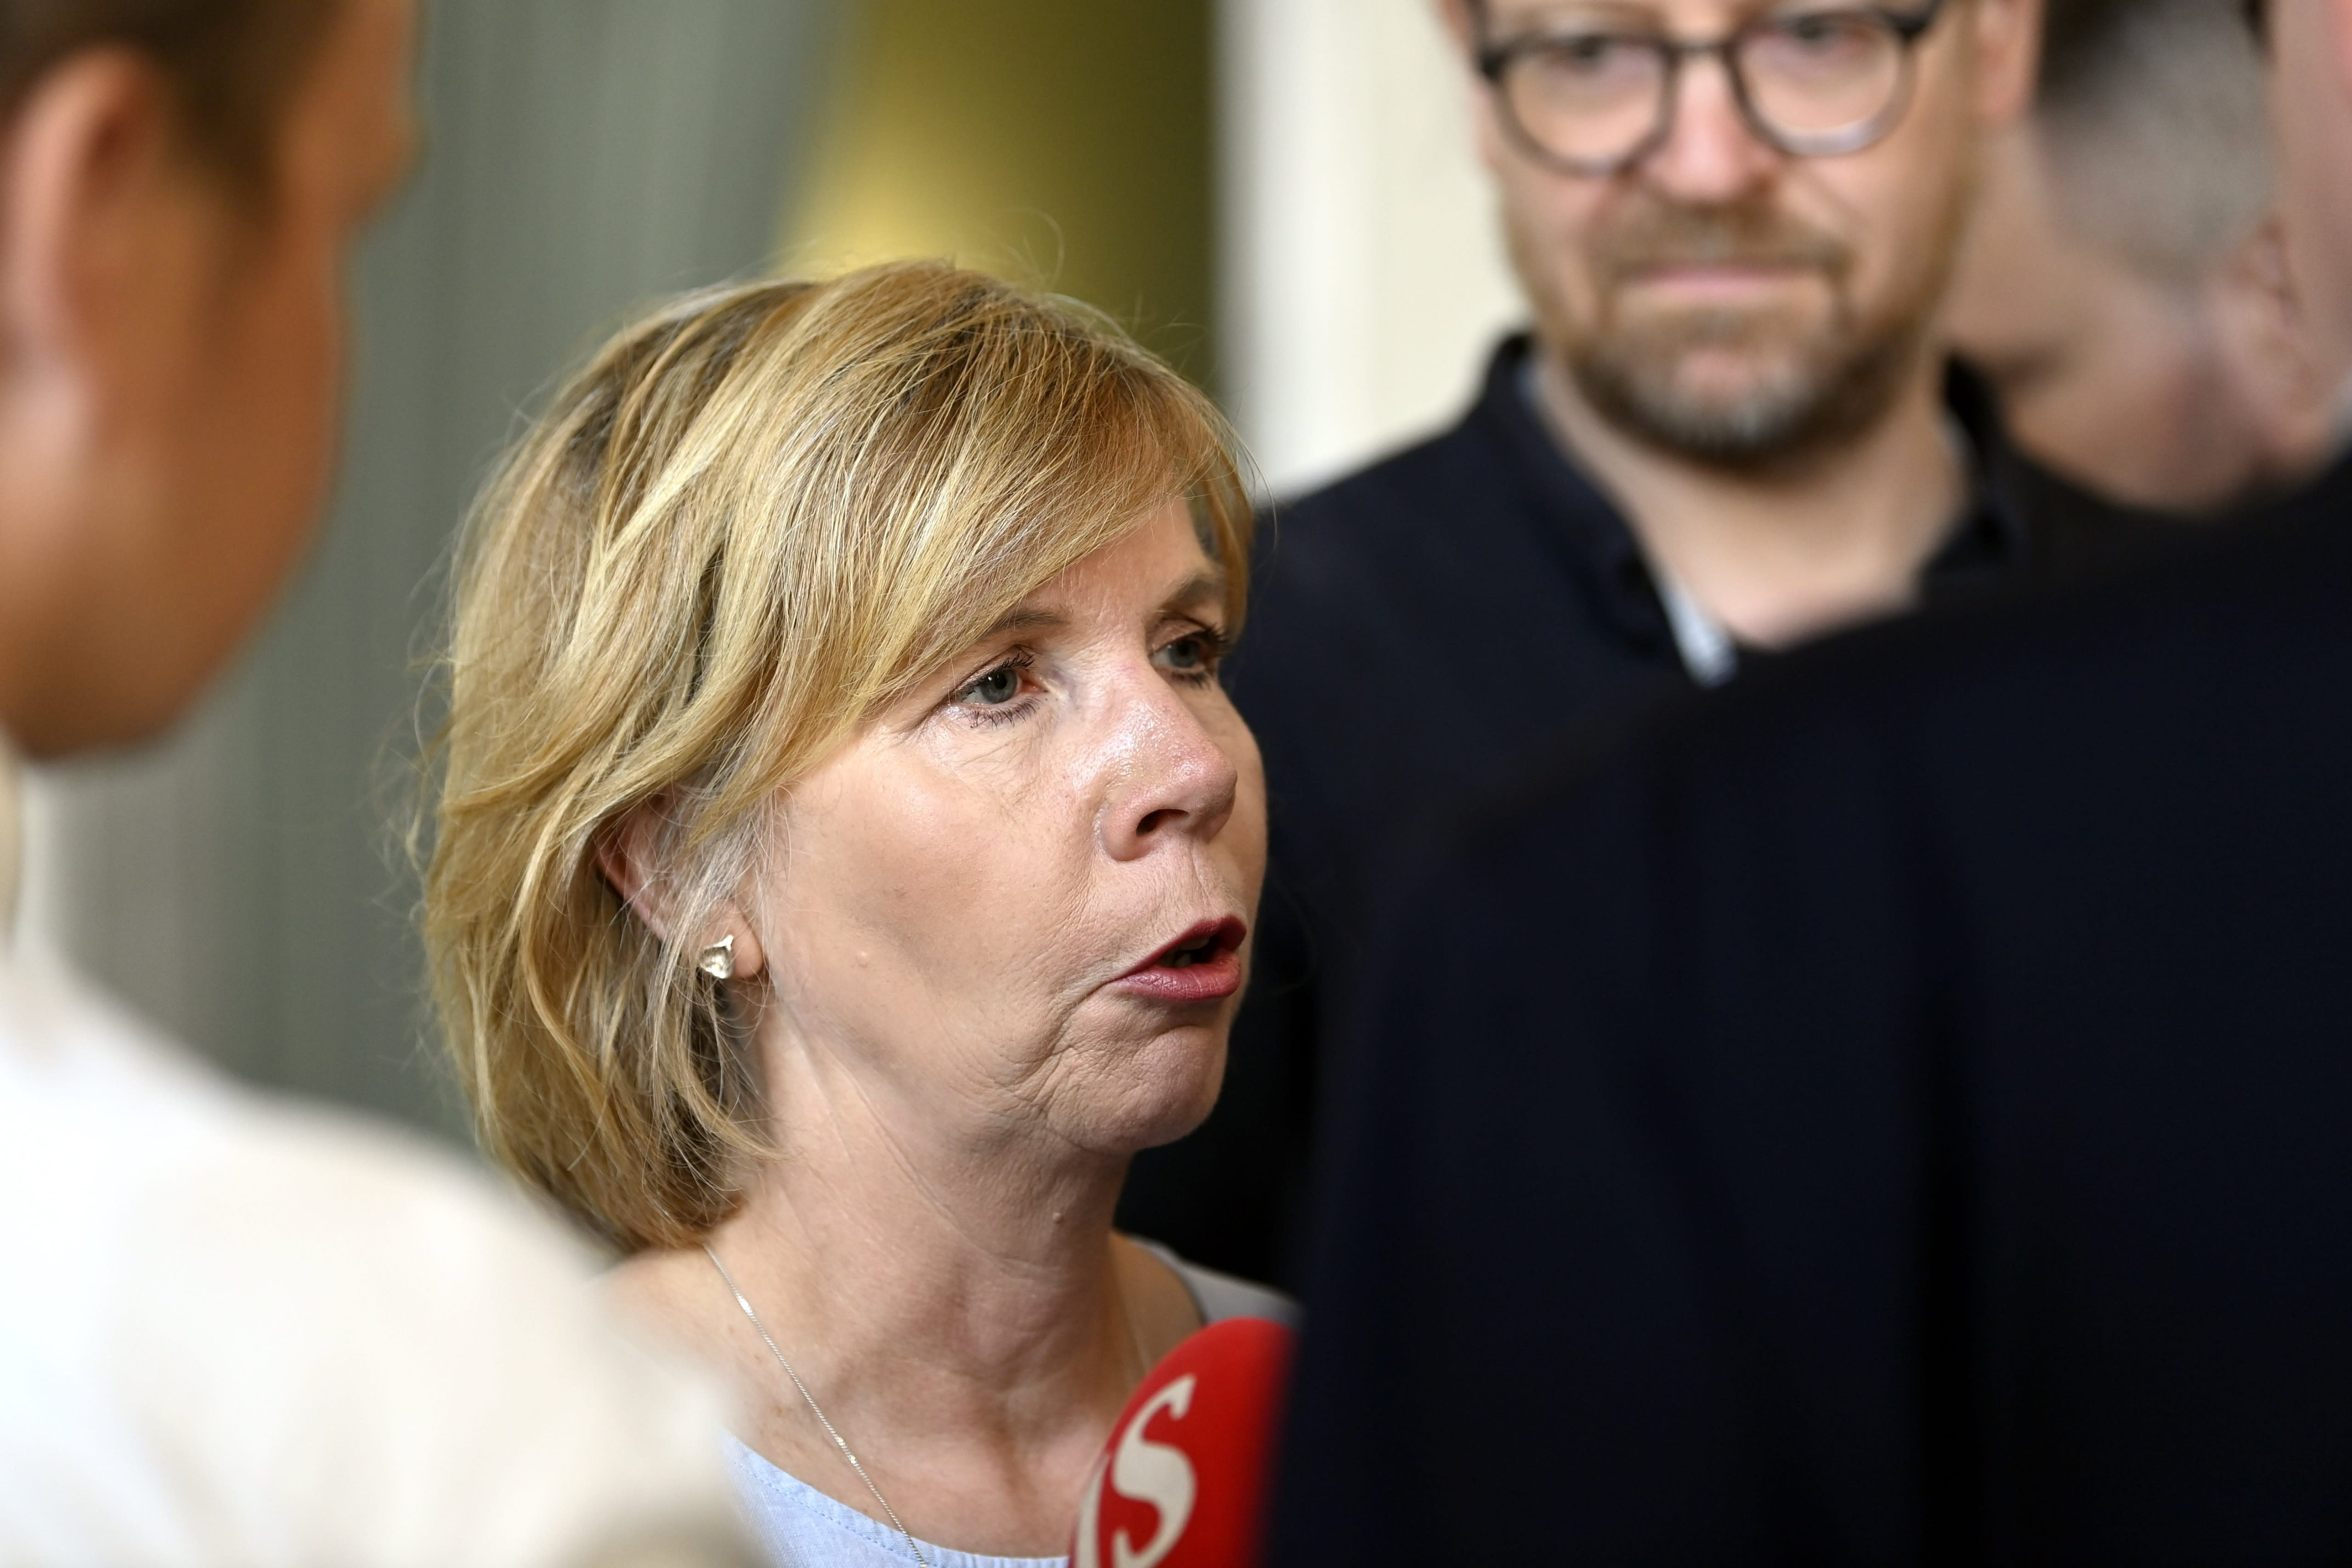 스웨덴 인민당 지도자들은 푸라 푸로레와 정부의 스캔들에 대해 논의하기 위해 긴급 회의를 소집했습니다.